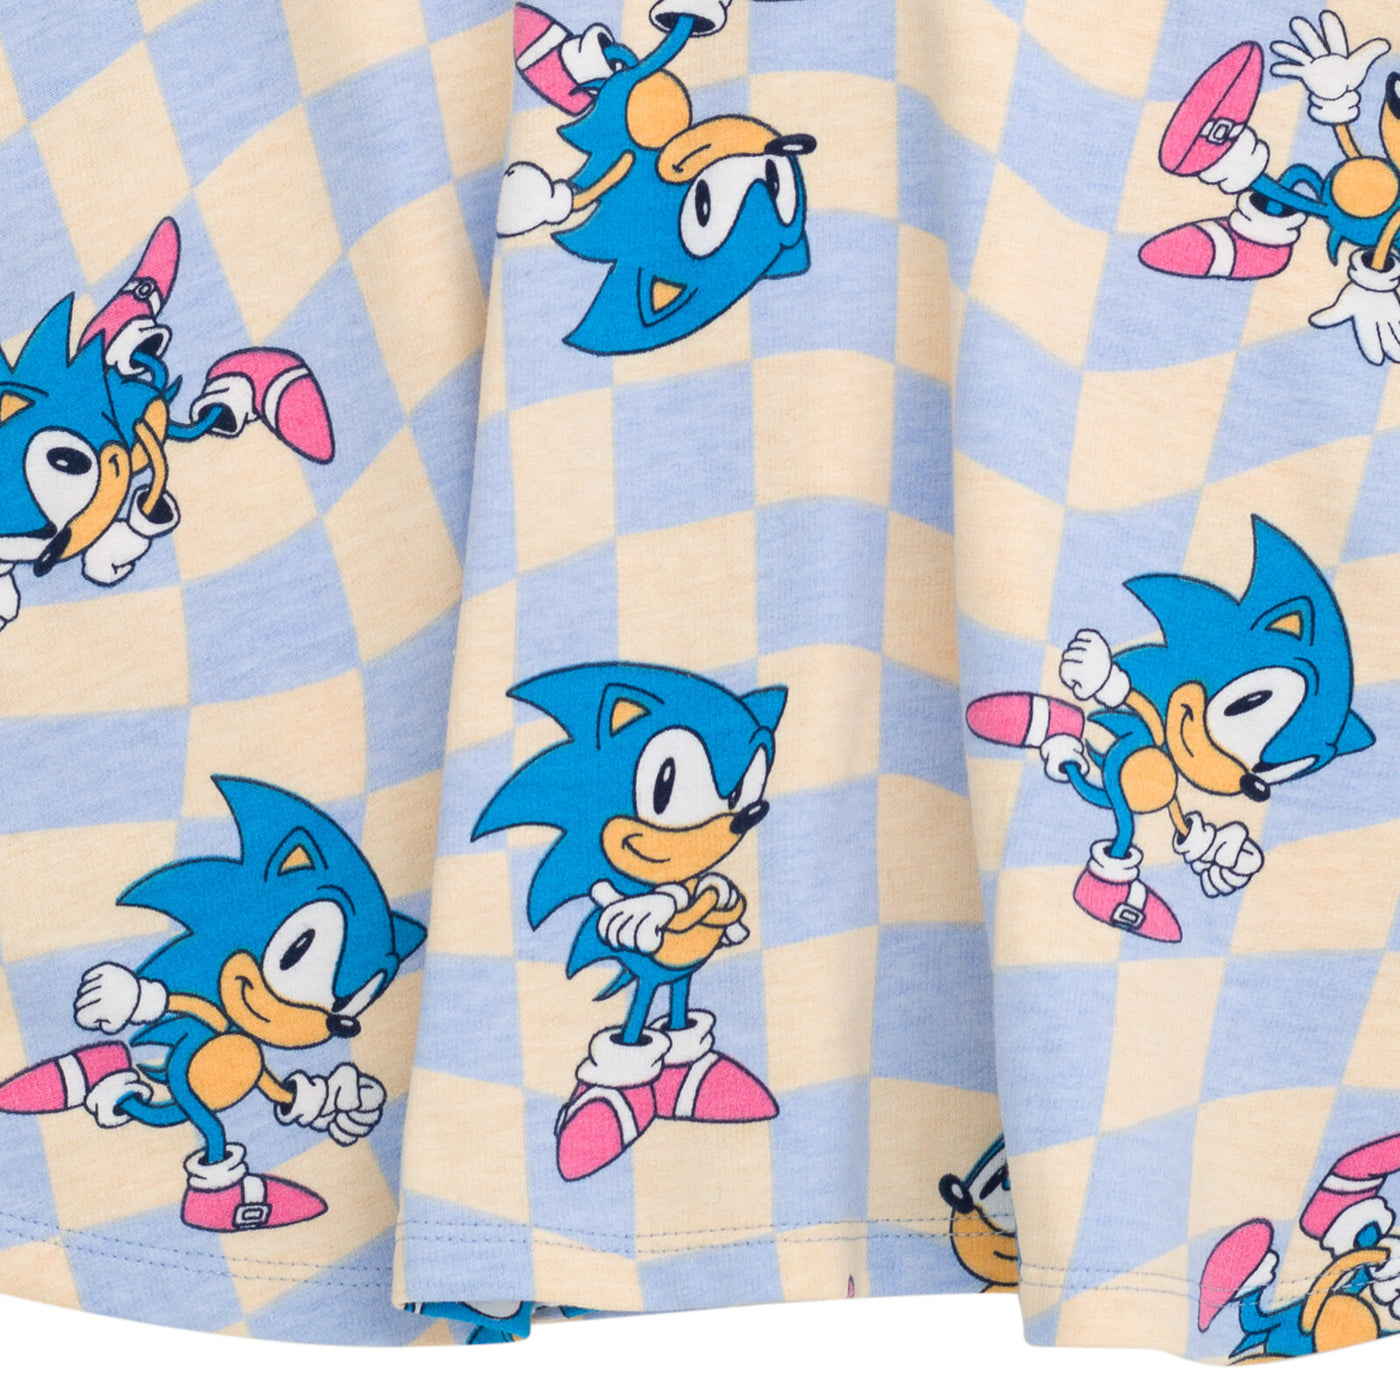 SEGA Sonic The Hedgehog French Terry Skater Dress